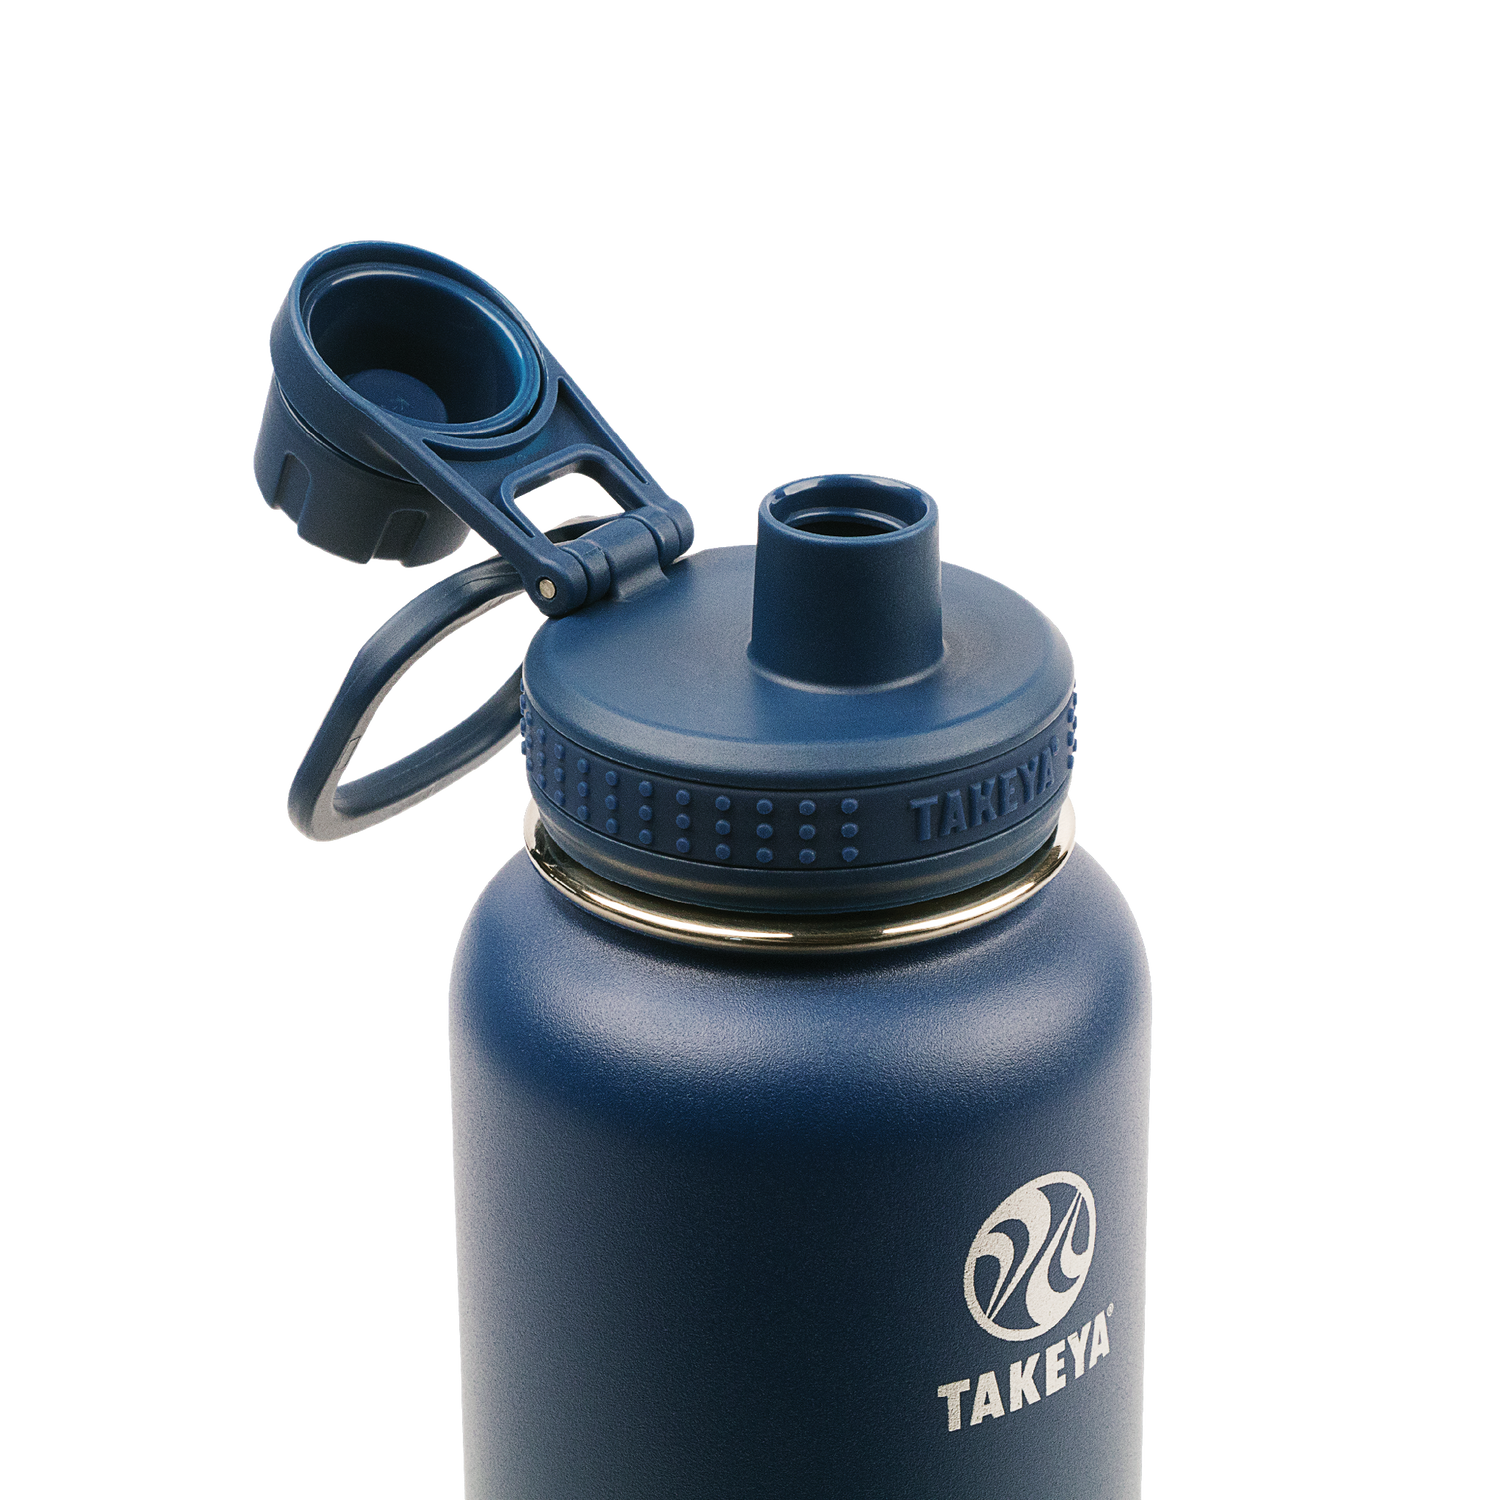 Takeya Actives Spout Water Bottle - Pink & Lavender - 32 oz